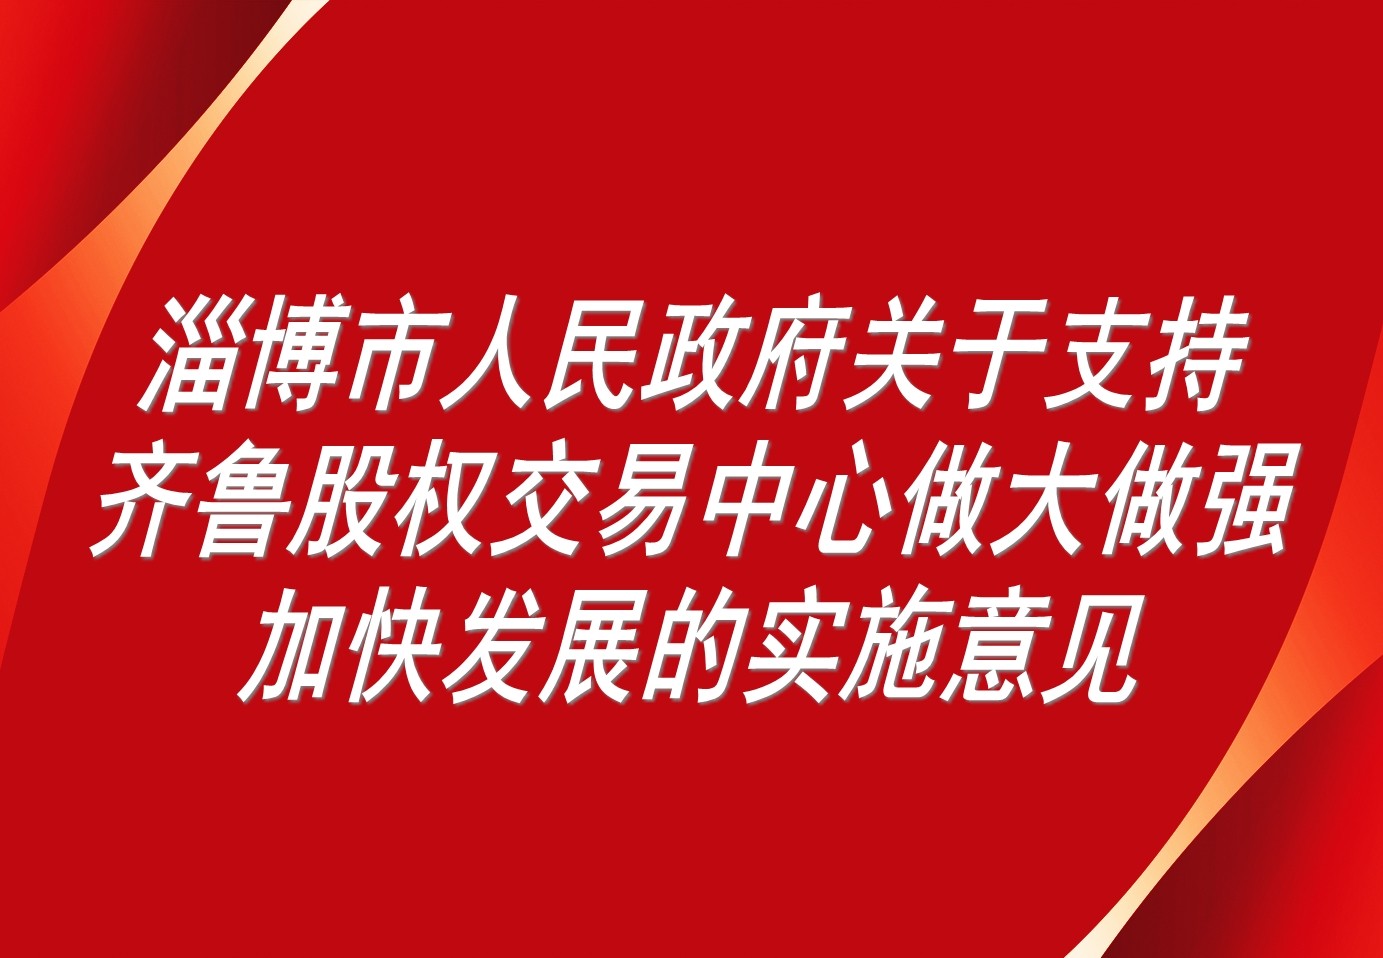 淄博市人民政府关于支持齐鲁股权交易中心做大做强加快发展的实施意见